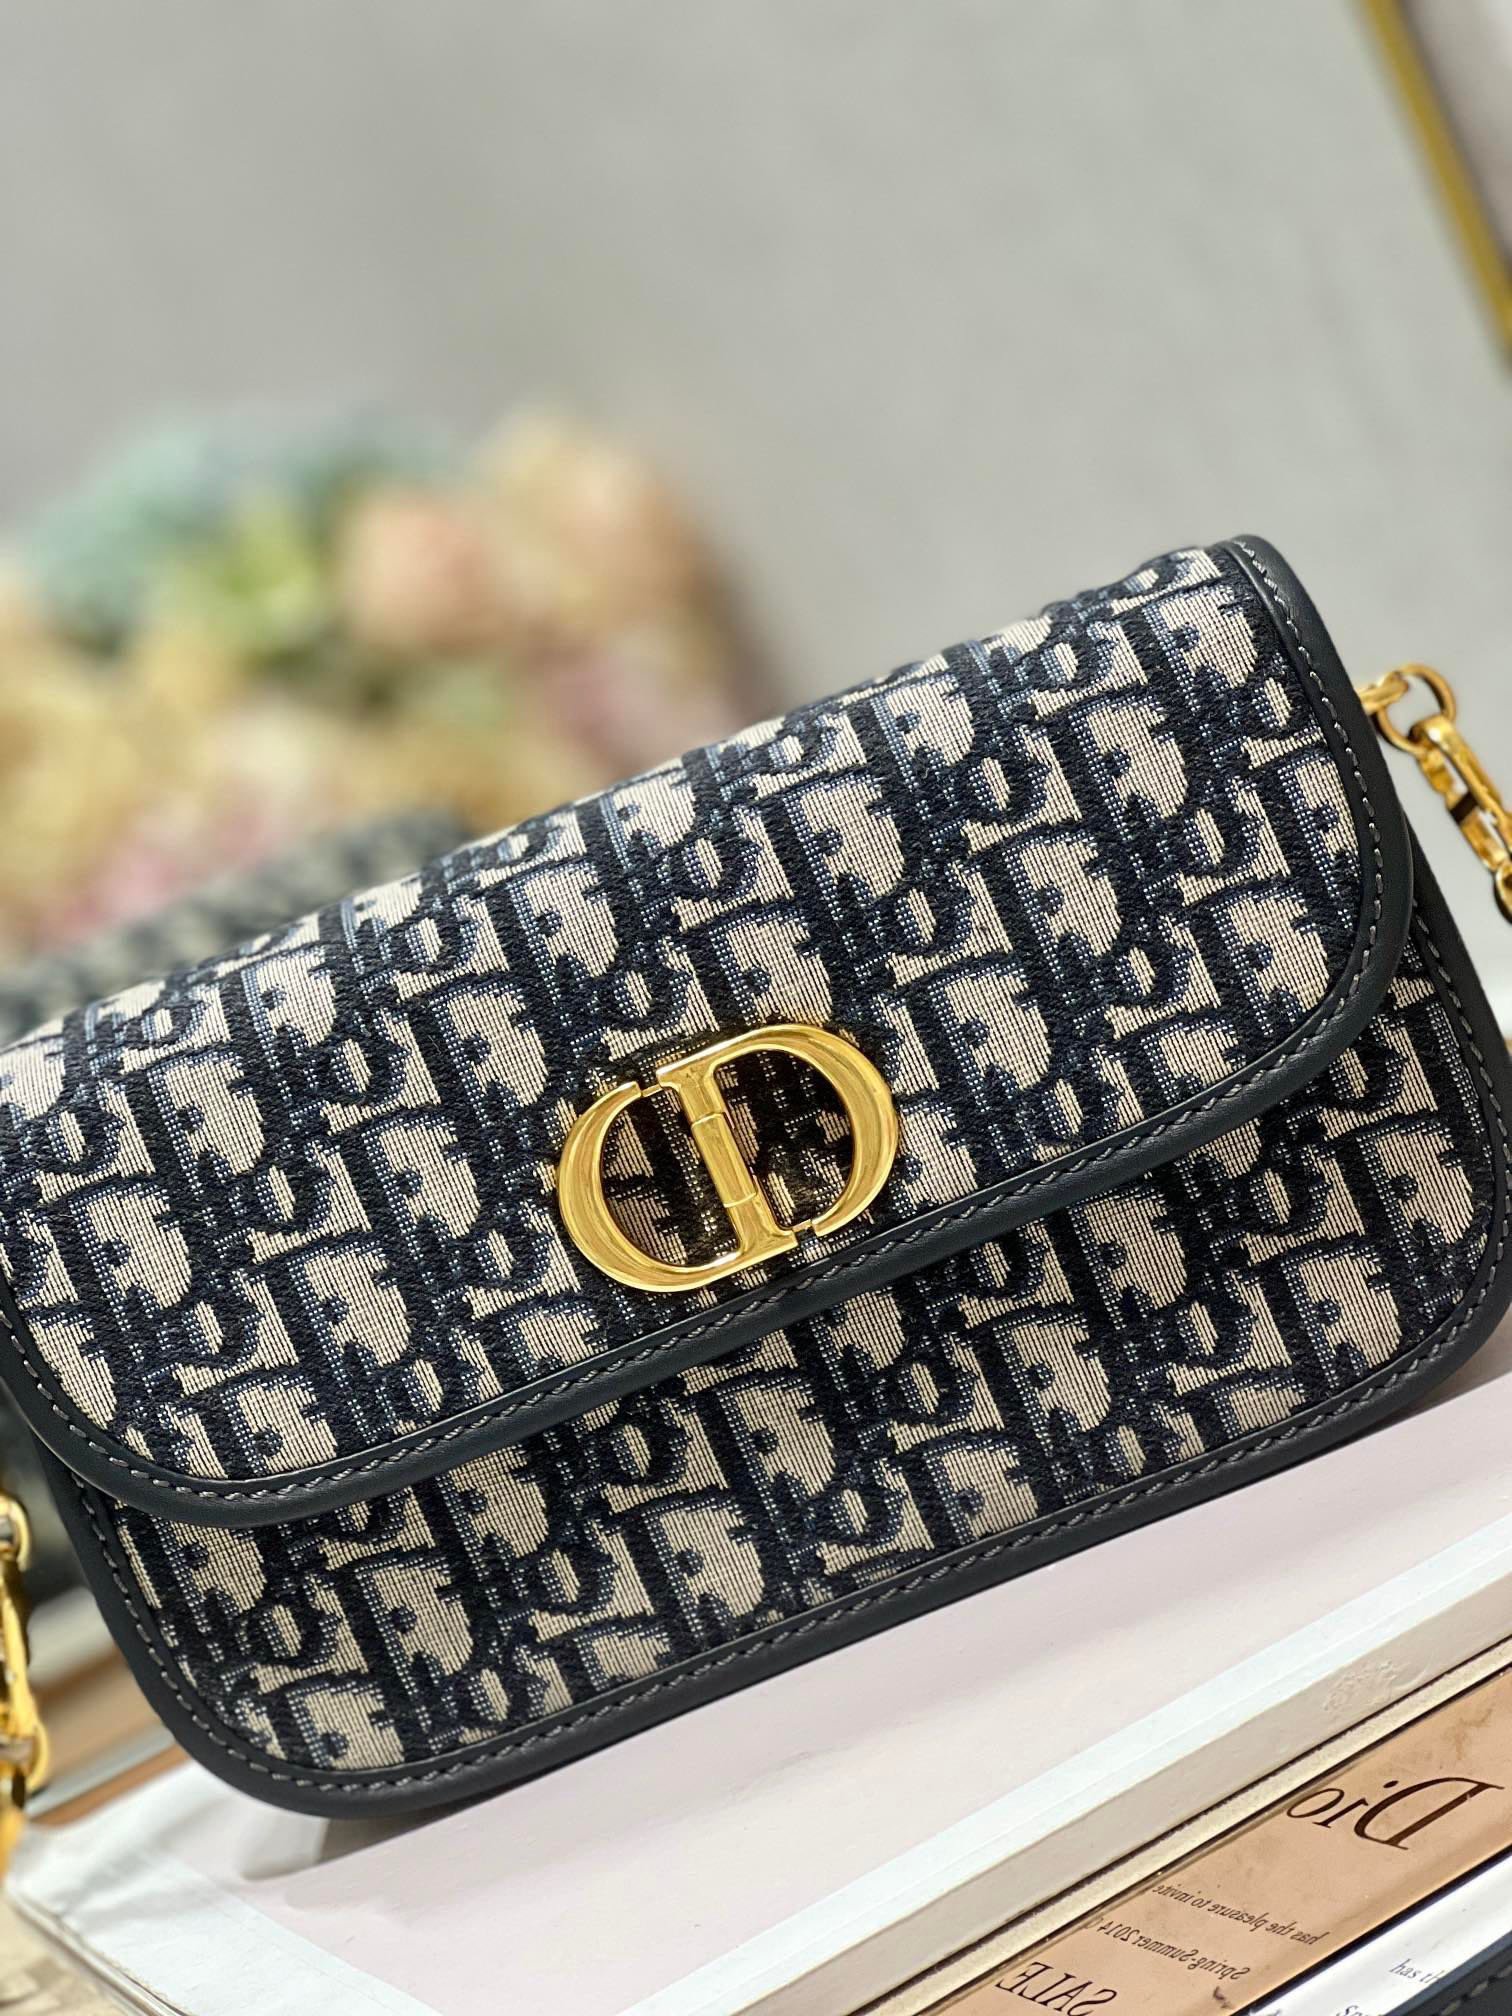 迪奥Dior顶级进口原厂牛皮刺绣链条包️30MontaigneAvenue手袋采用典雅的设计提升此经典系